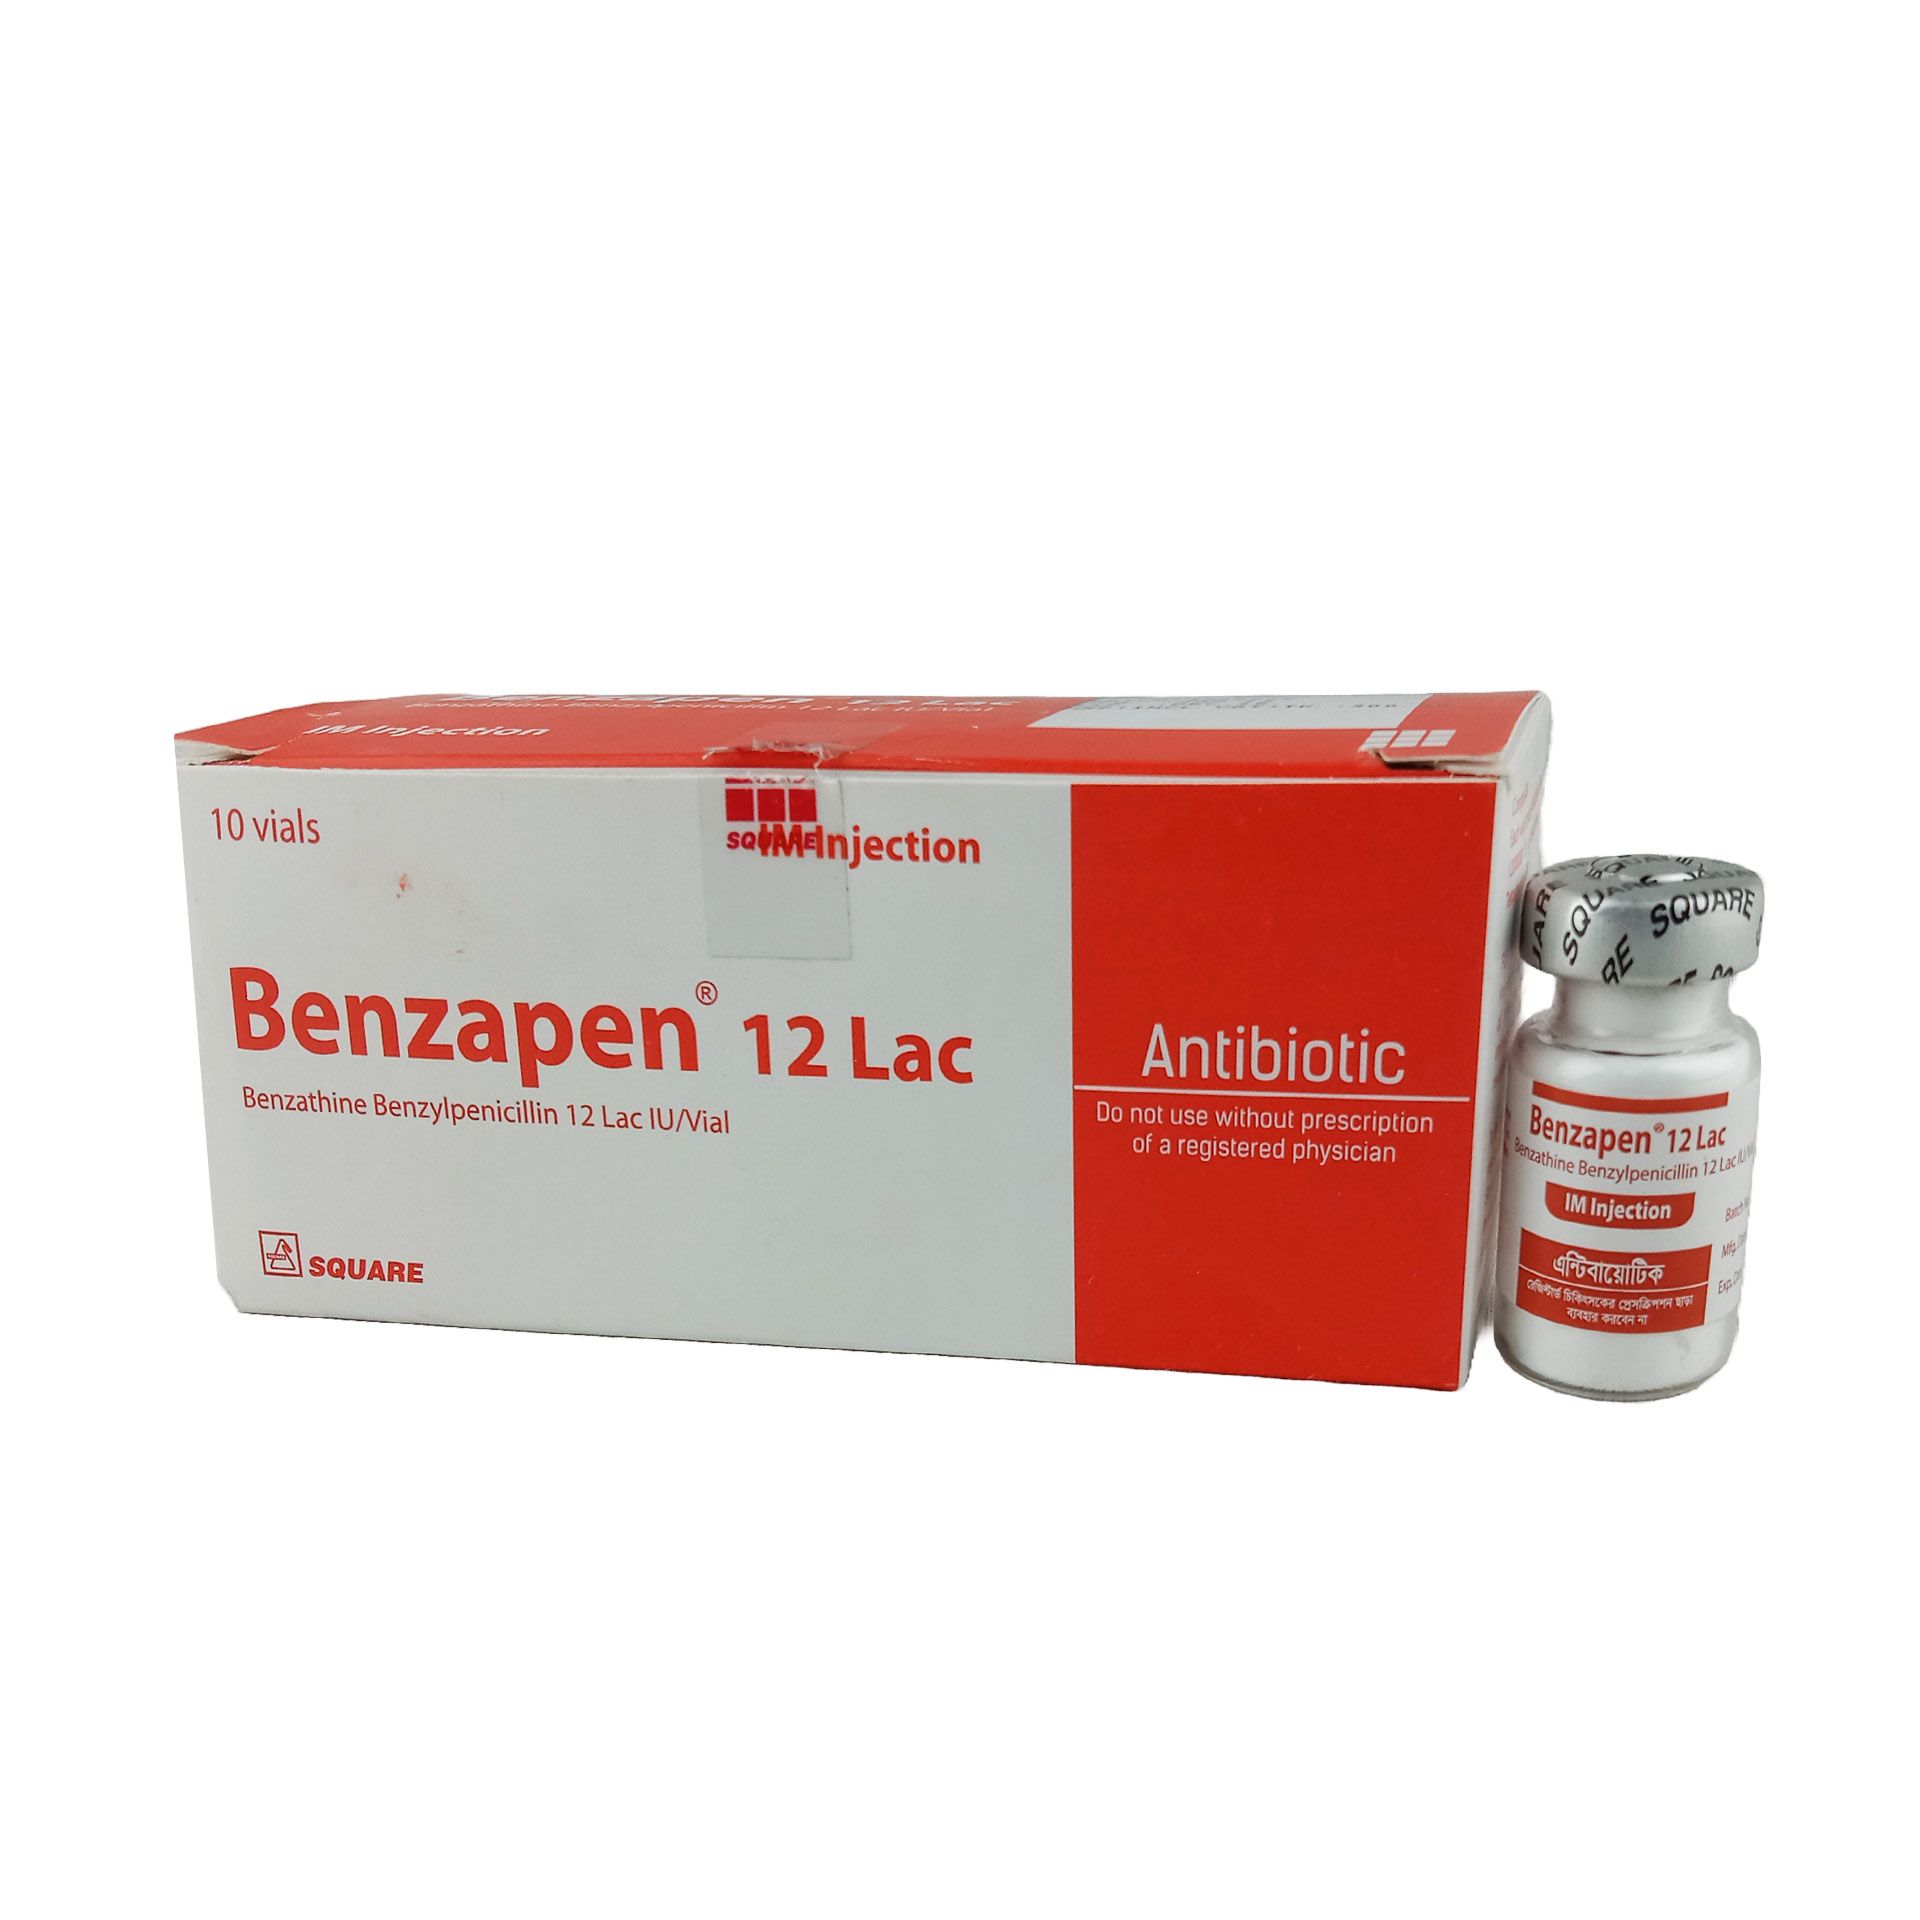 Benzapen 12 Lac 12LacUnit Injection